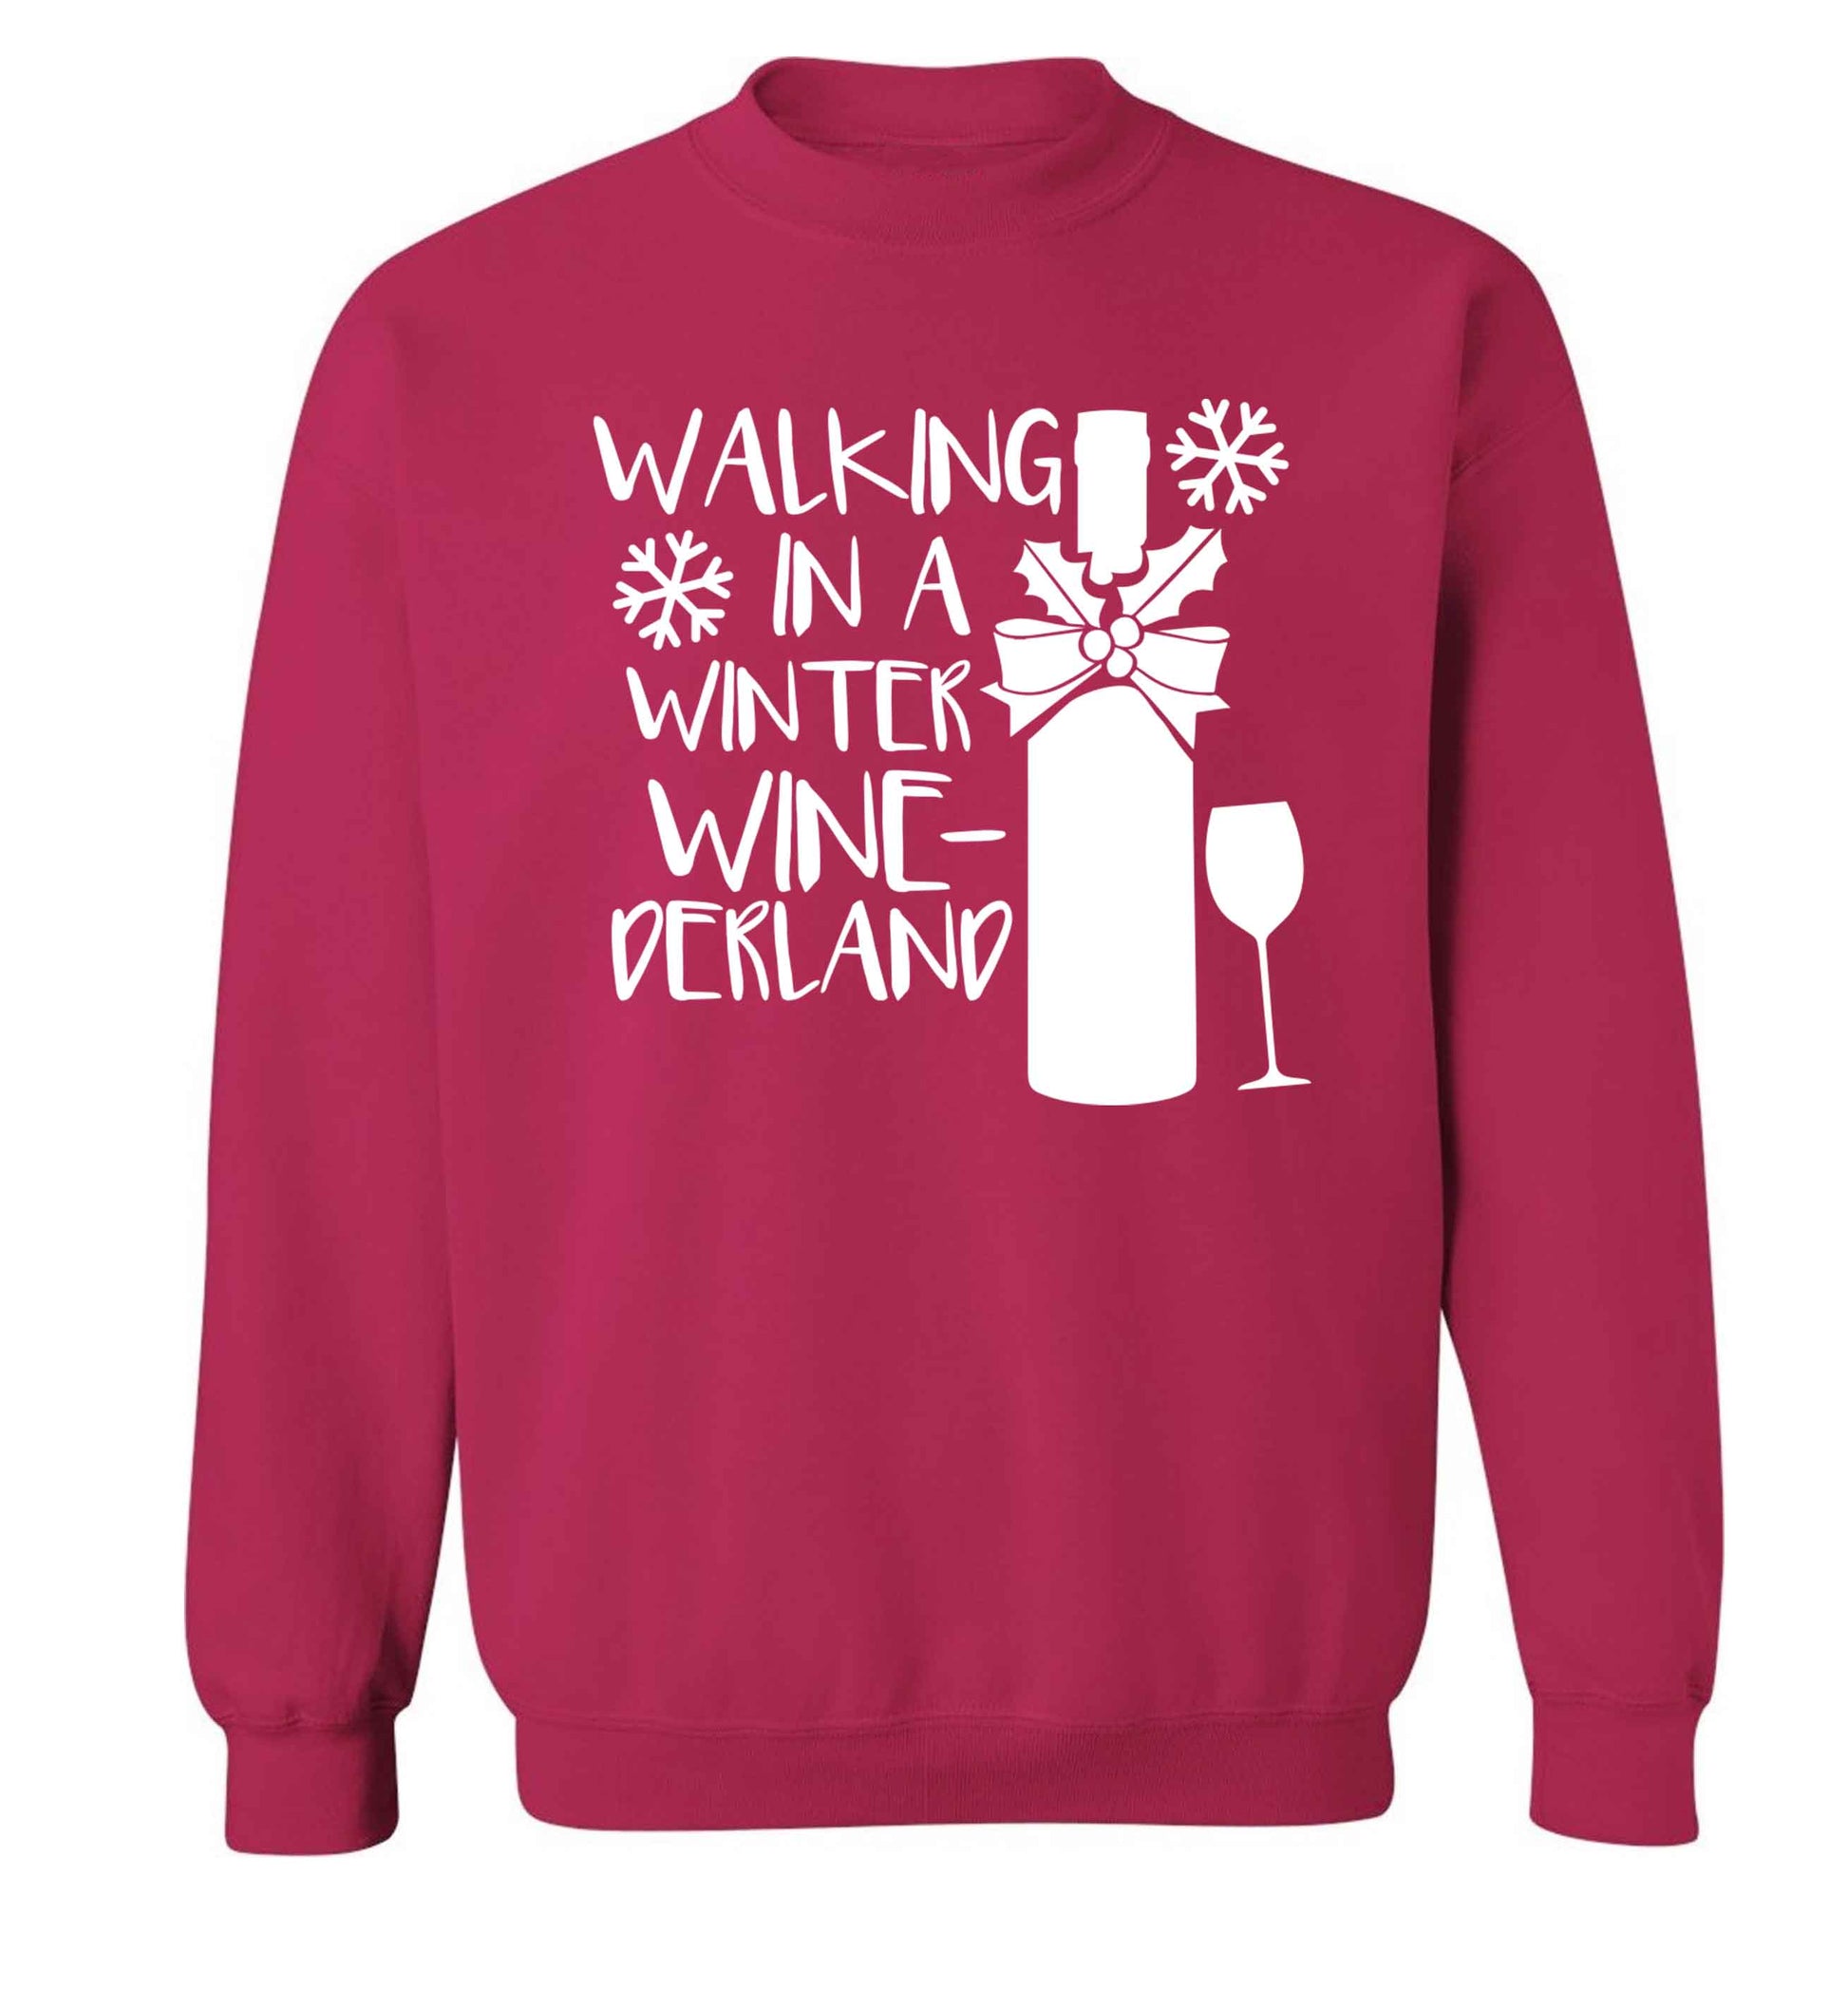 Walking in a wine-derwonderland Adult's unisex pink Sweater 2XL